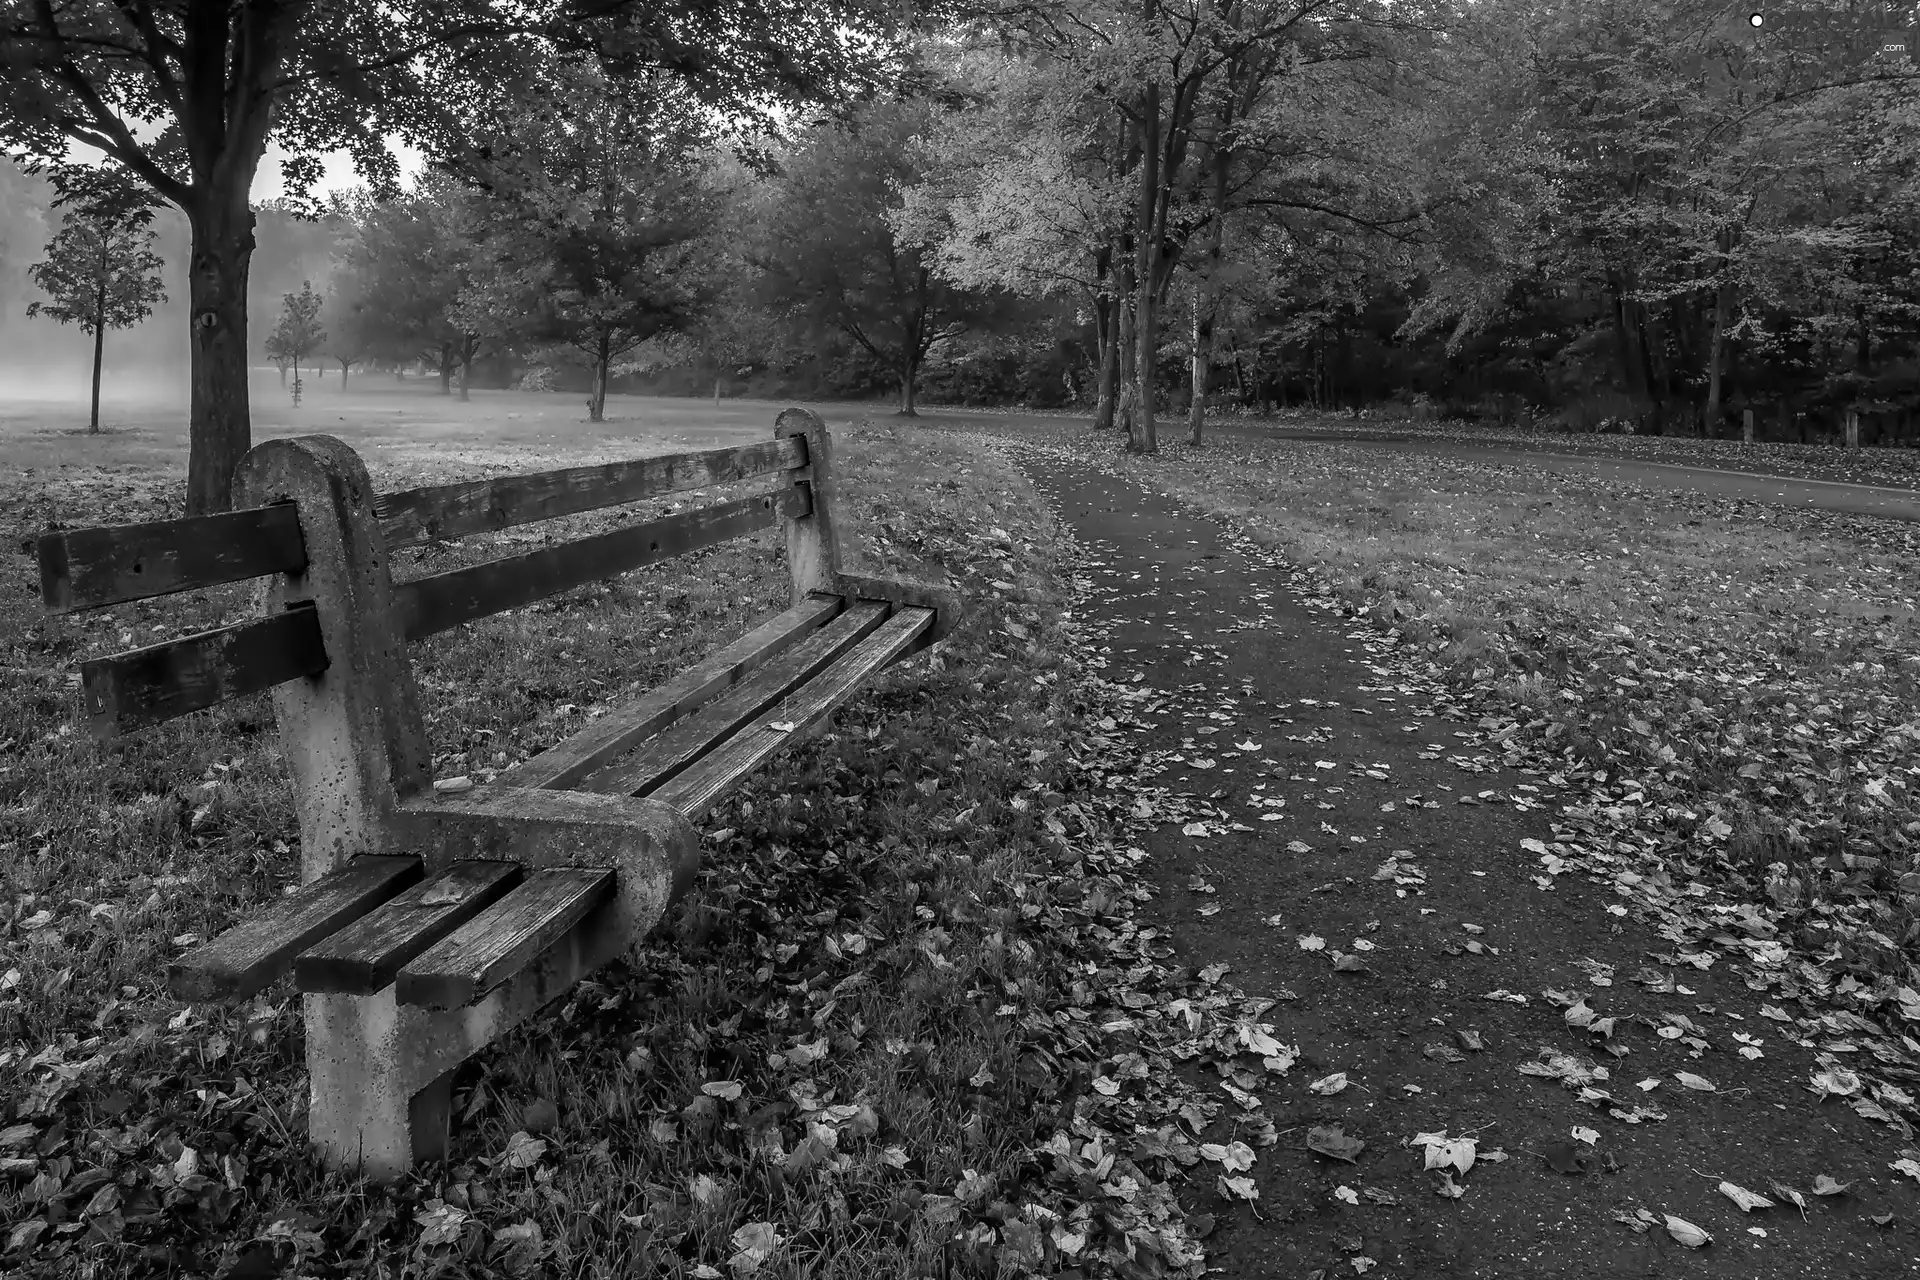 Bench, autumn, Park